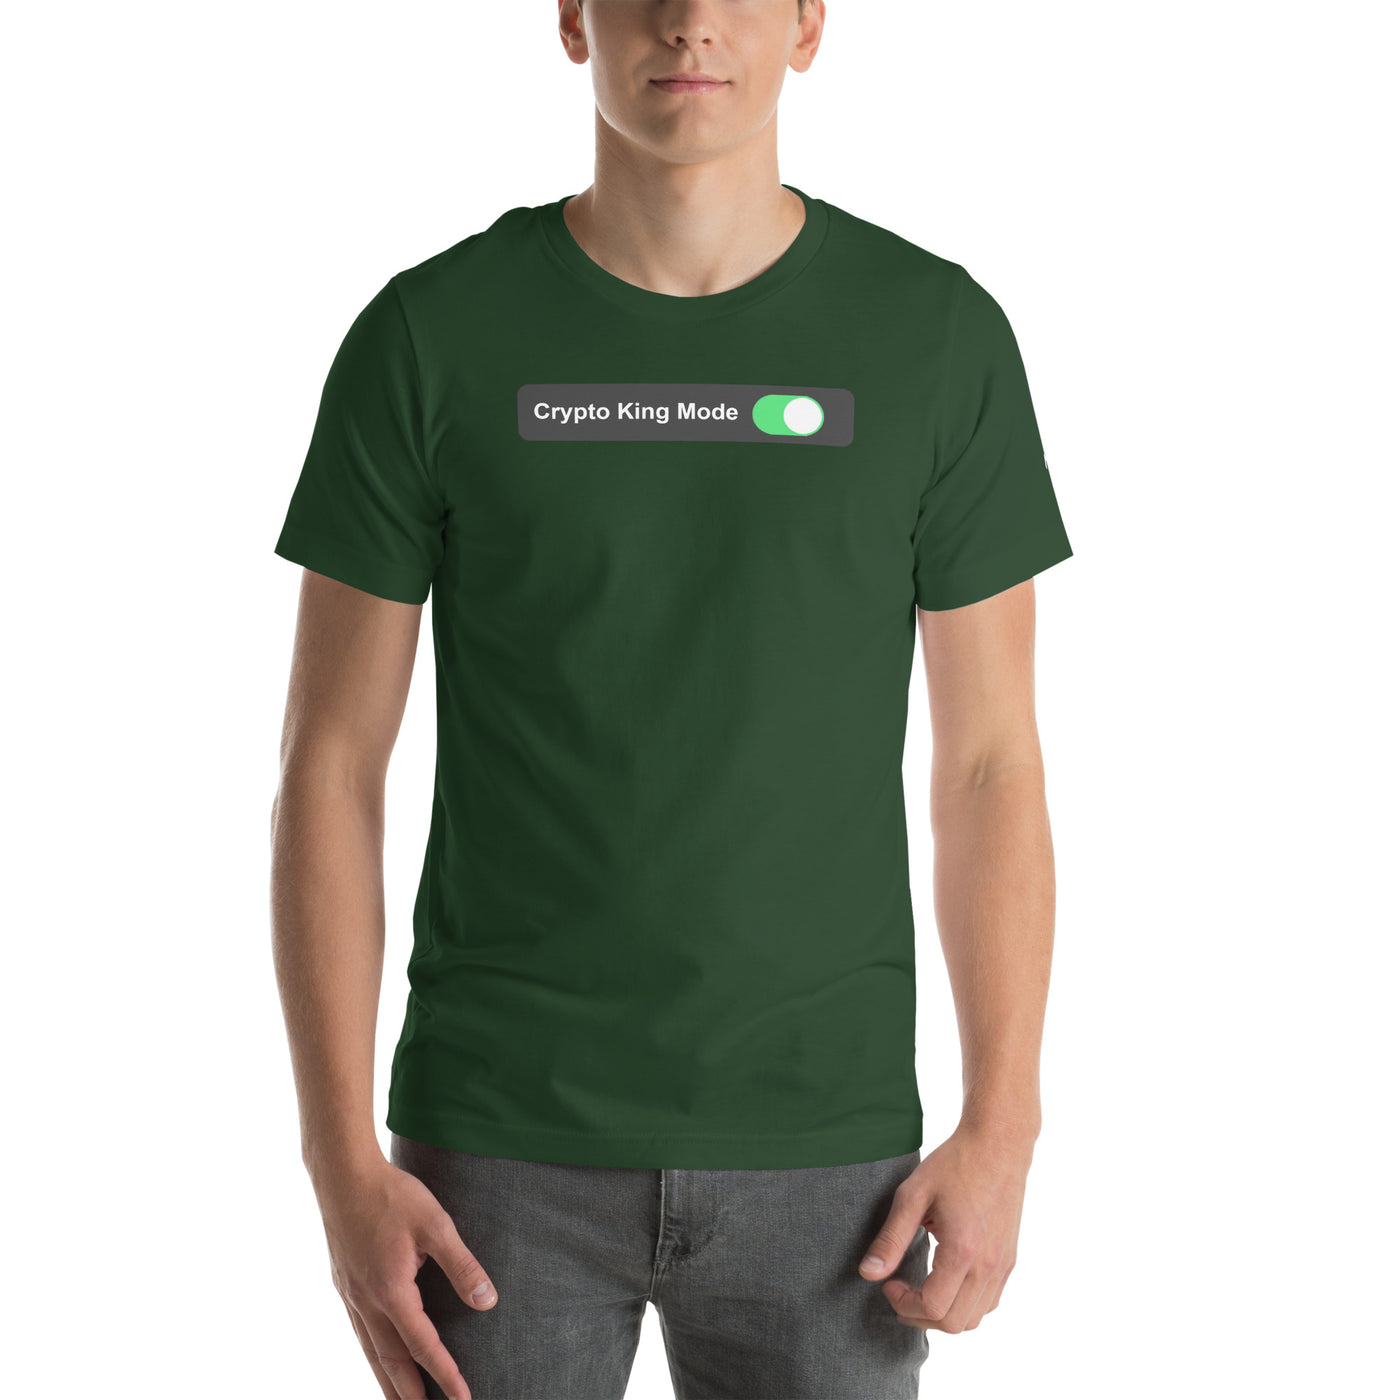 Crypto King Mode On - Unisex t-shirt